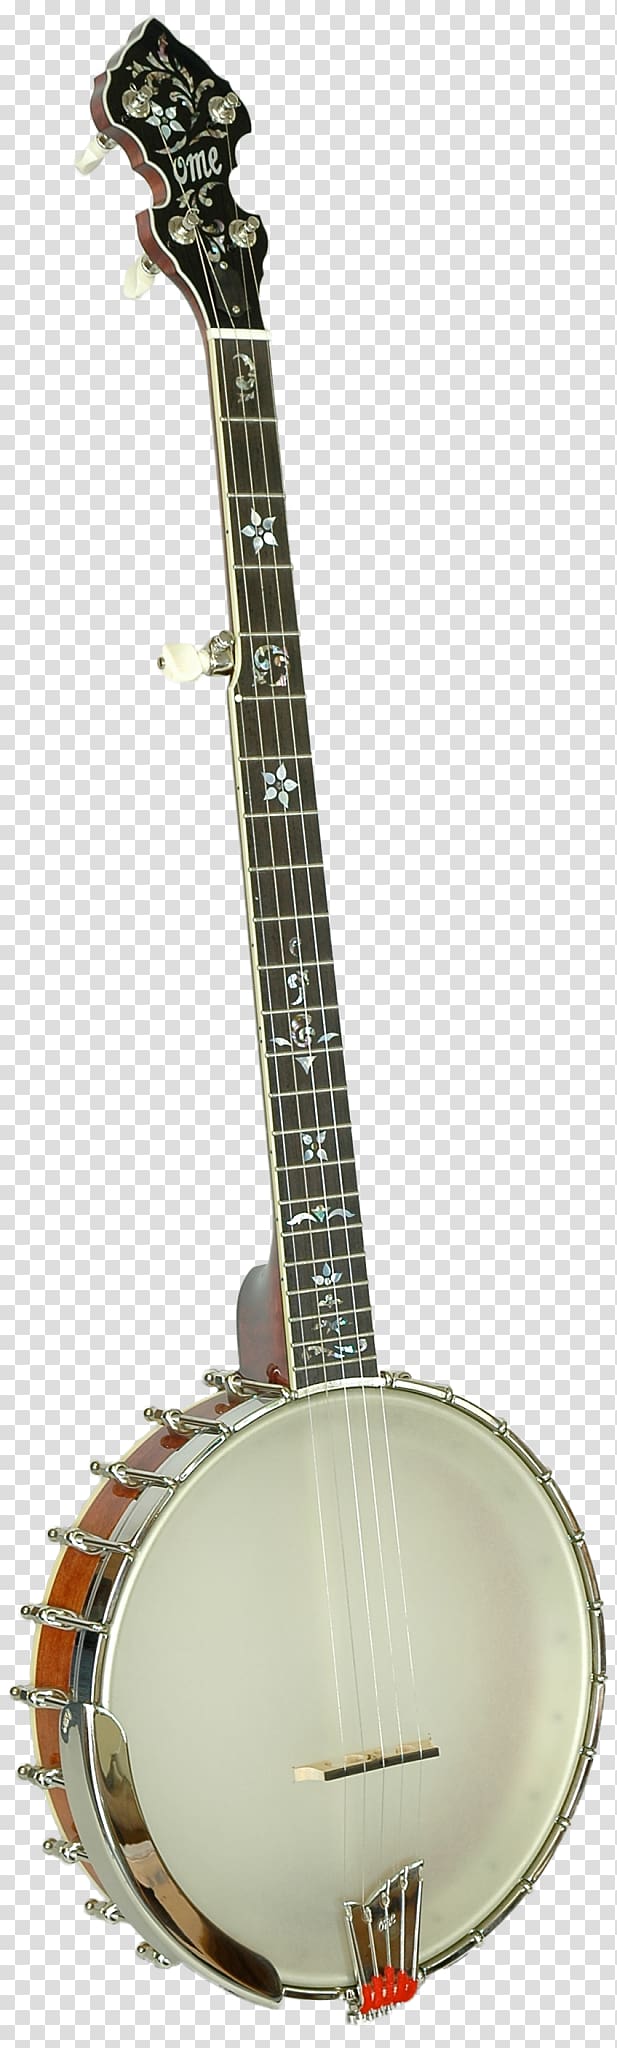 Banjo guitar Acoustic guitar Banjo uke Acoustic-electric guitar Mandolin, Acoustic Guitar transparent background PNG clipart